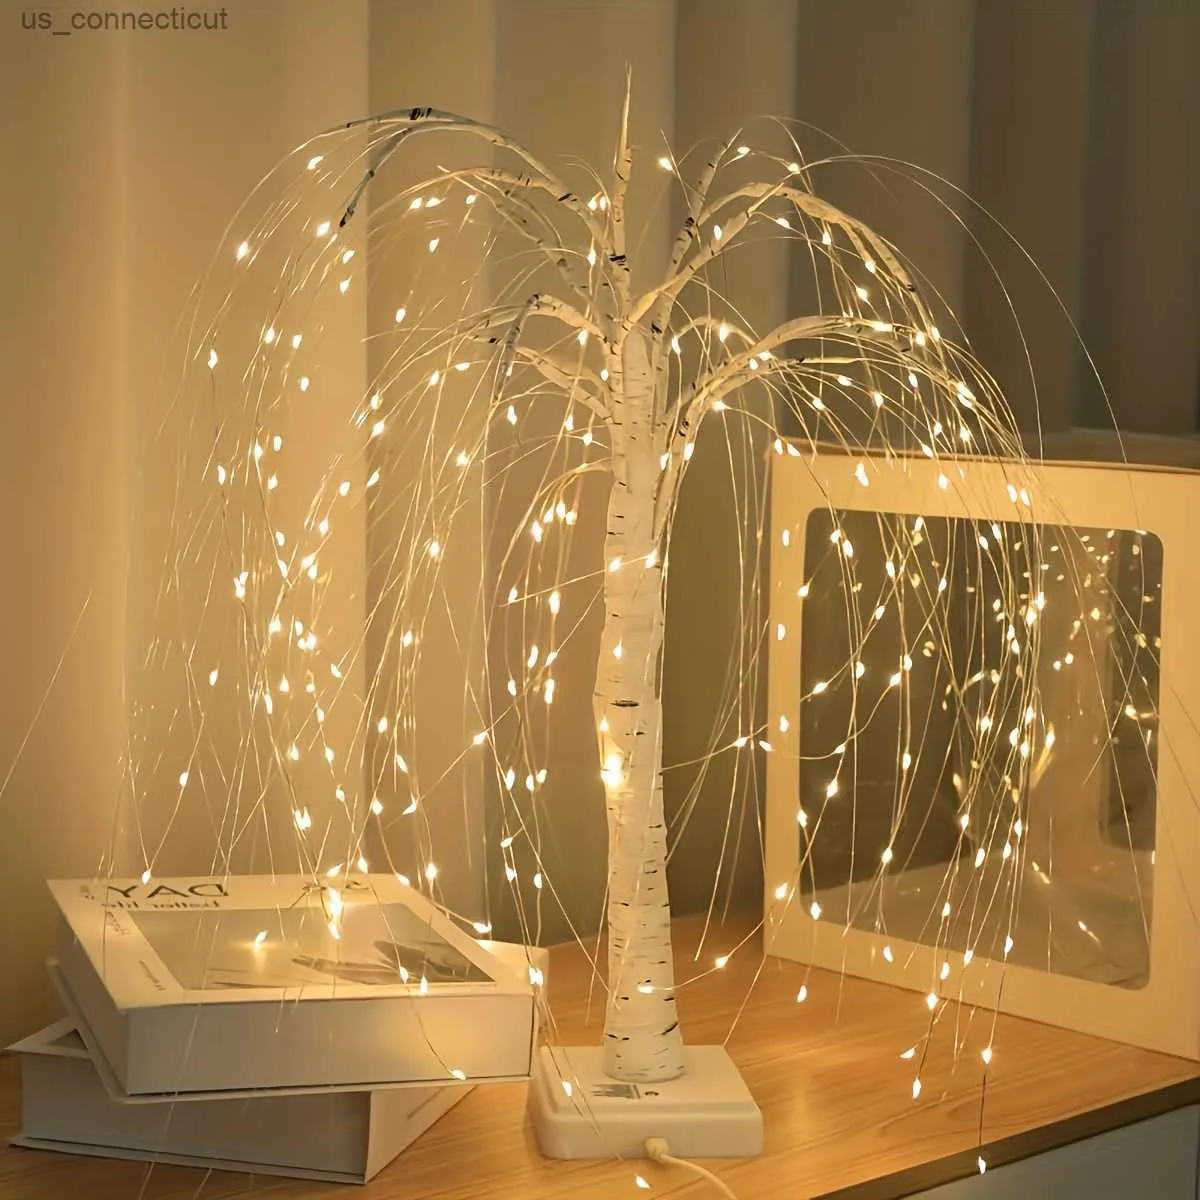 Lampes de table LED Willow Tree Light avec 8 modes - Couleur régulière à double puissance parfaite pour les occasions spéciales à la maison